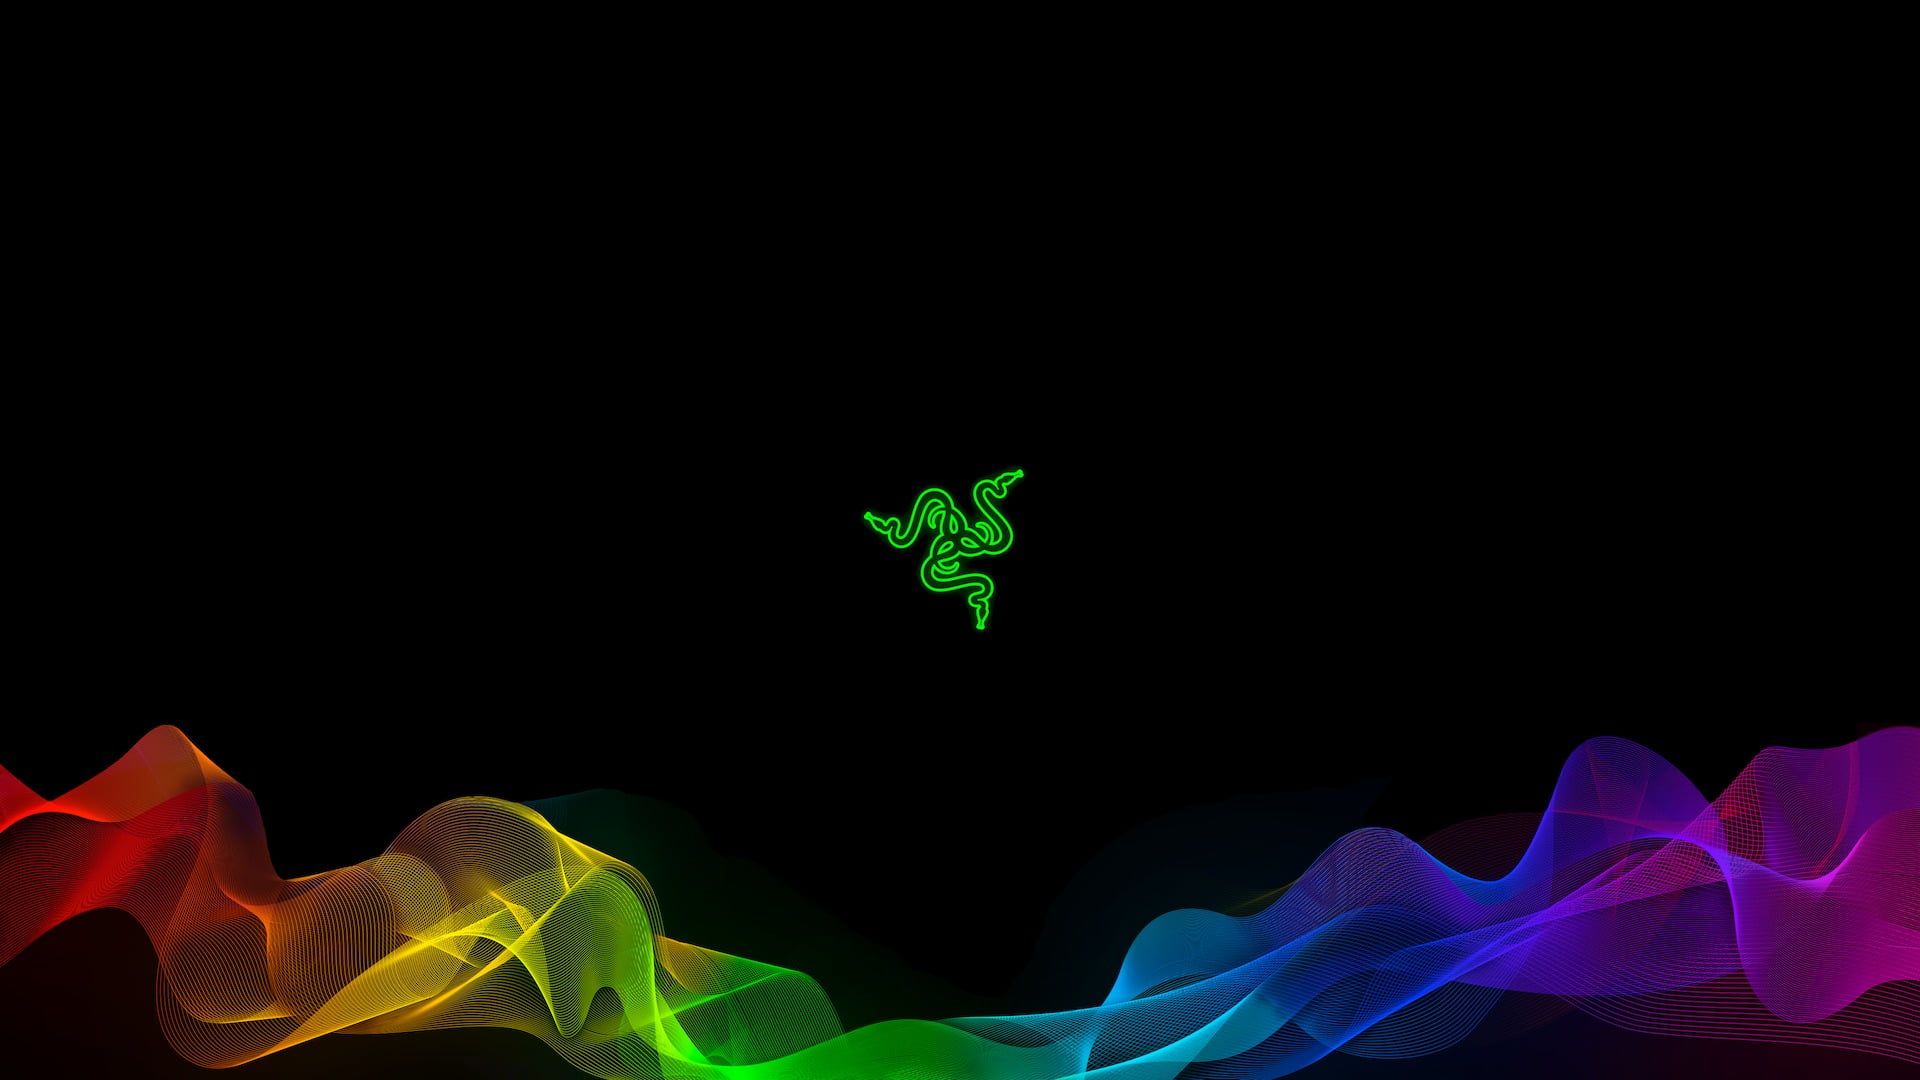 Razer logo #Razer Razer Inc. #brand #logo #logotype #colorful P # wallpaper #hdwallpaper #desktop. Razer, Apple logo wallpaper, Wallpaper